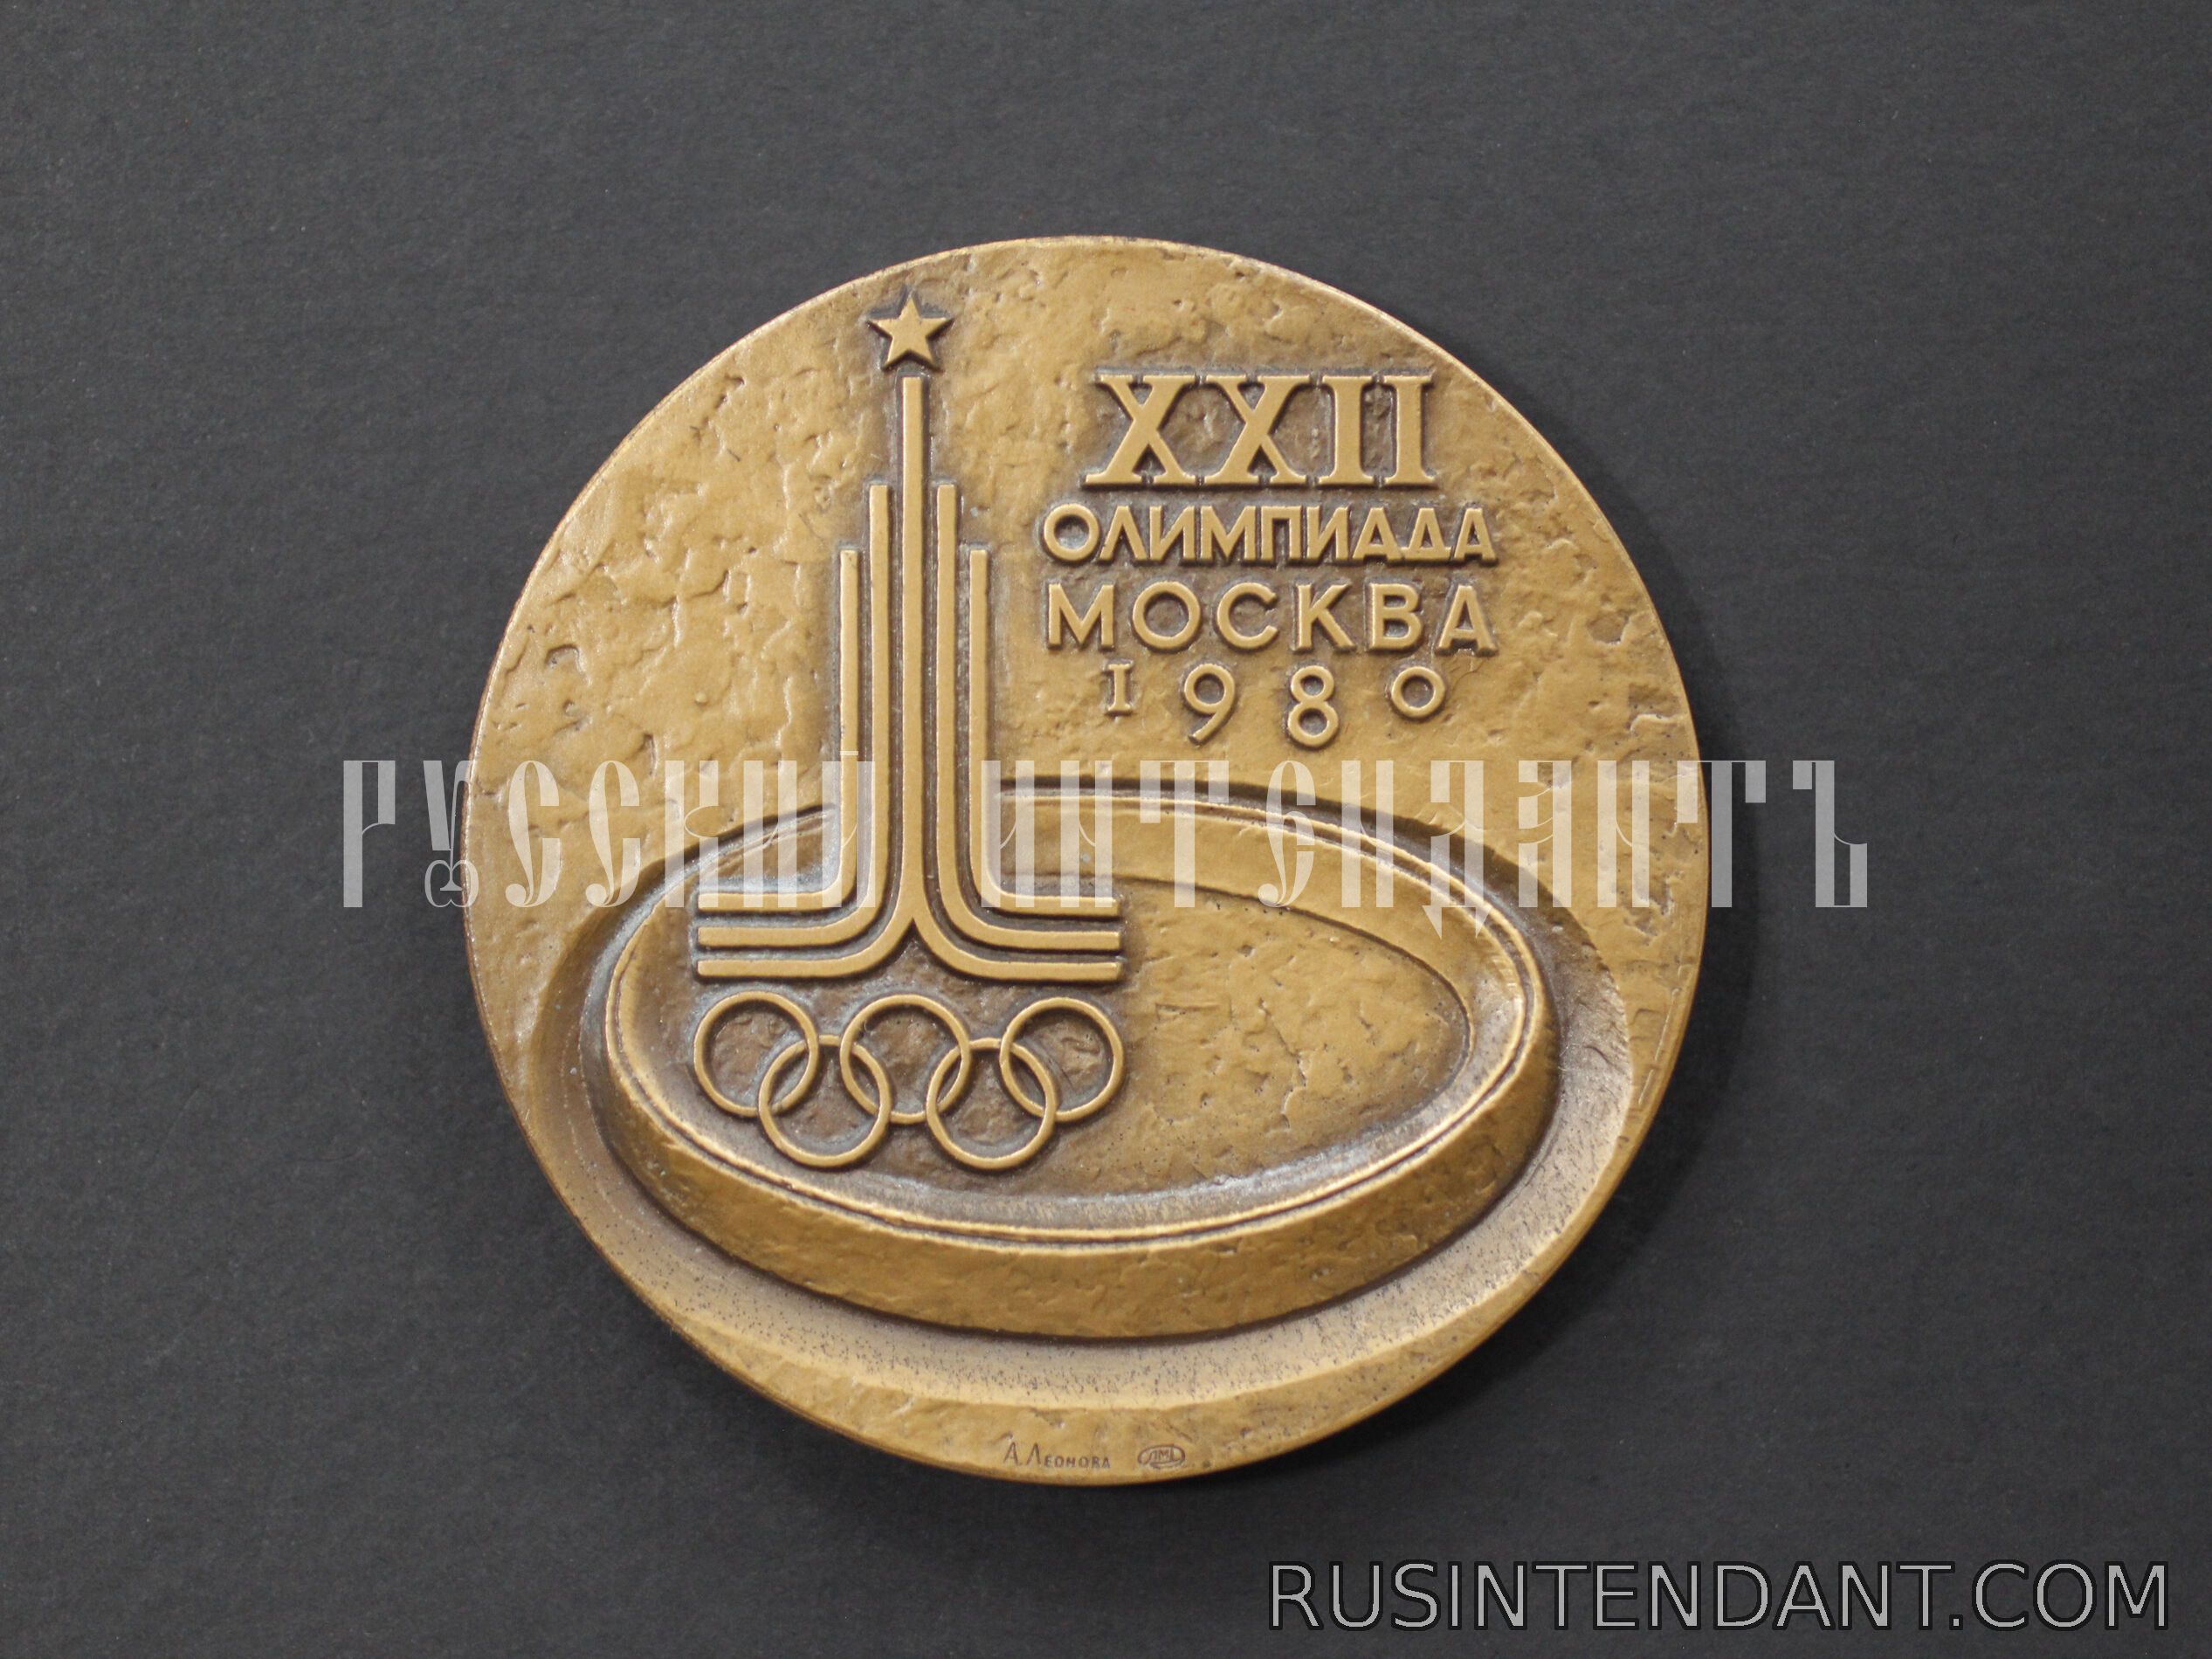 Фото 4: Настольная медаль участника Олимпийских игр 1980 года 